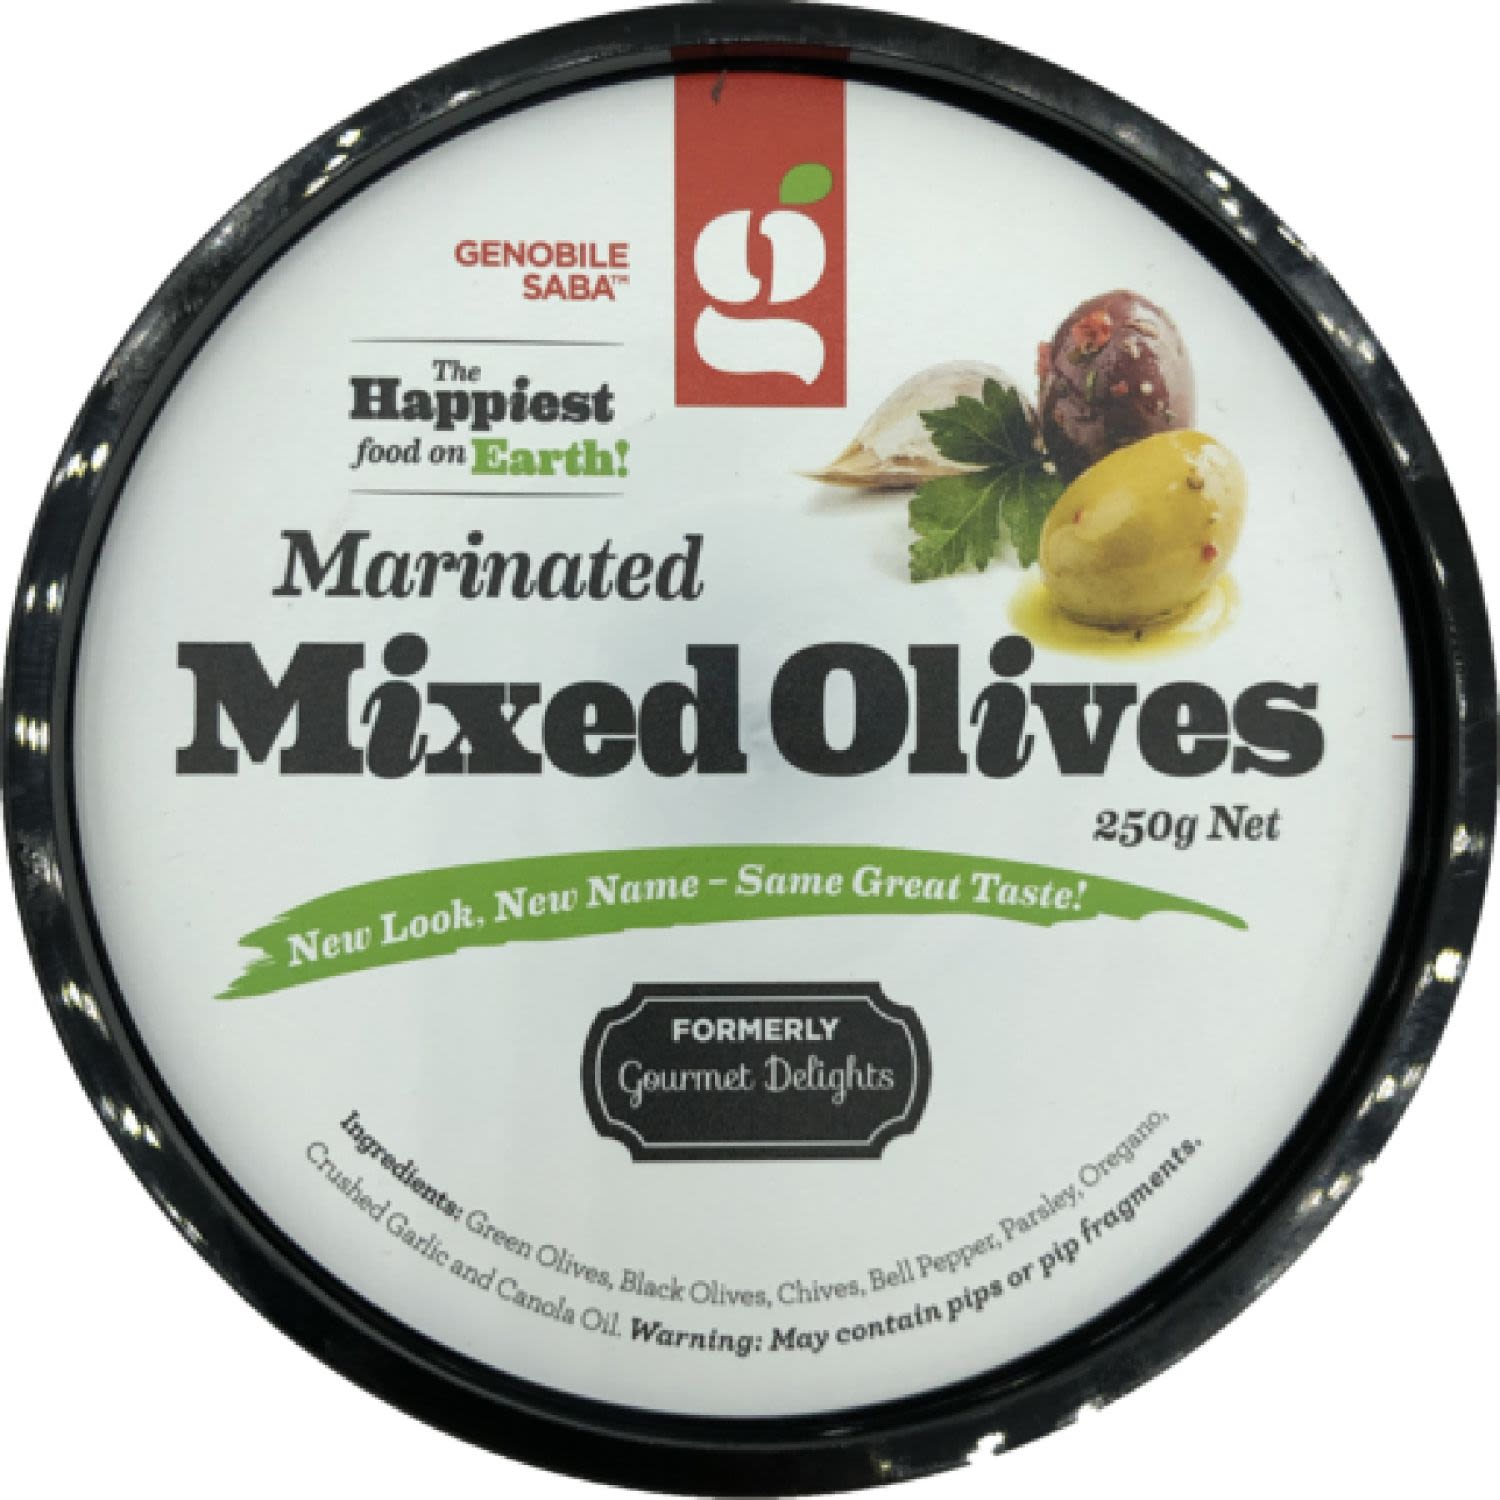 Genobile Saba Marinated Mixed Olives